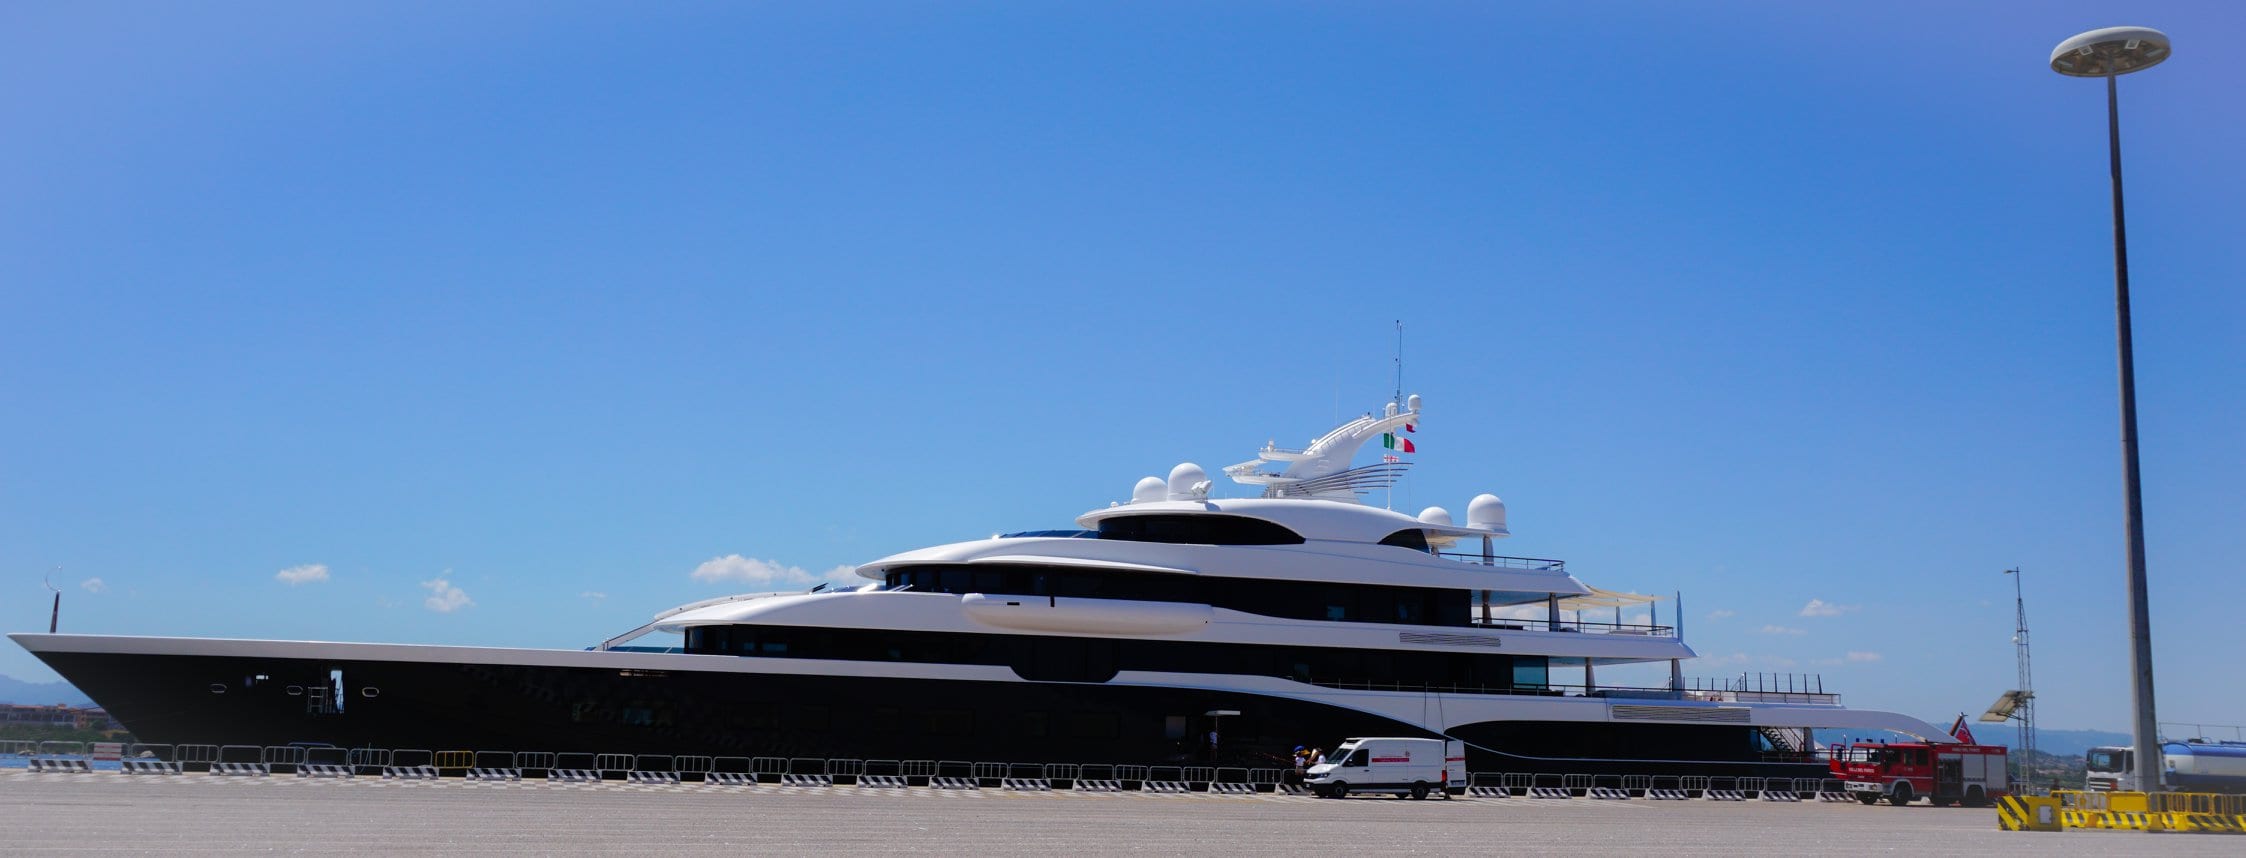 Symphony, lo yacht di Louis Vuitton, è approdato alle Egadi